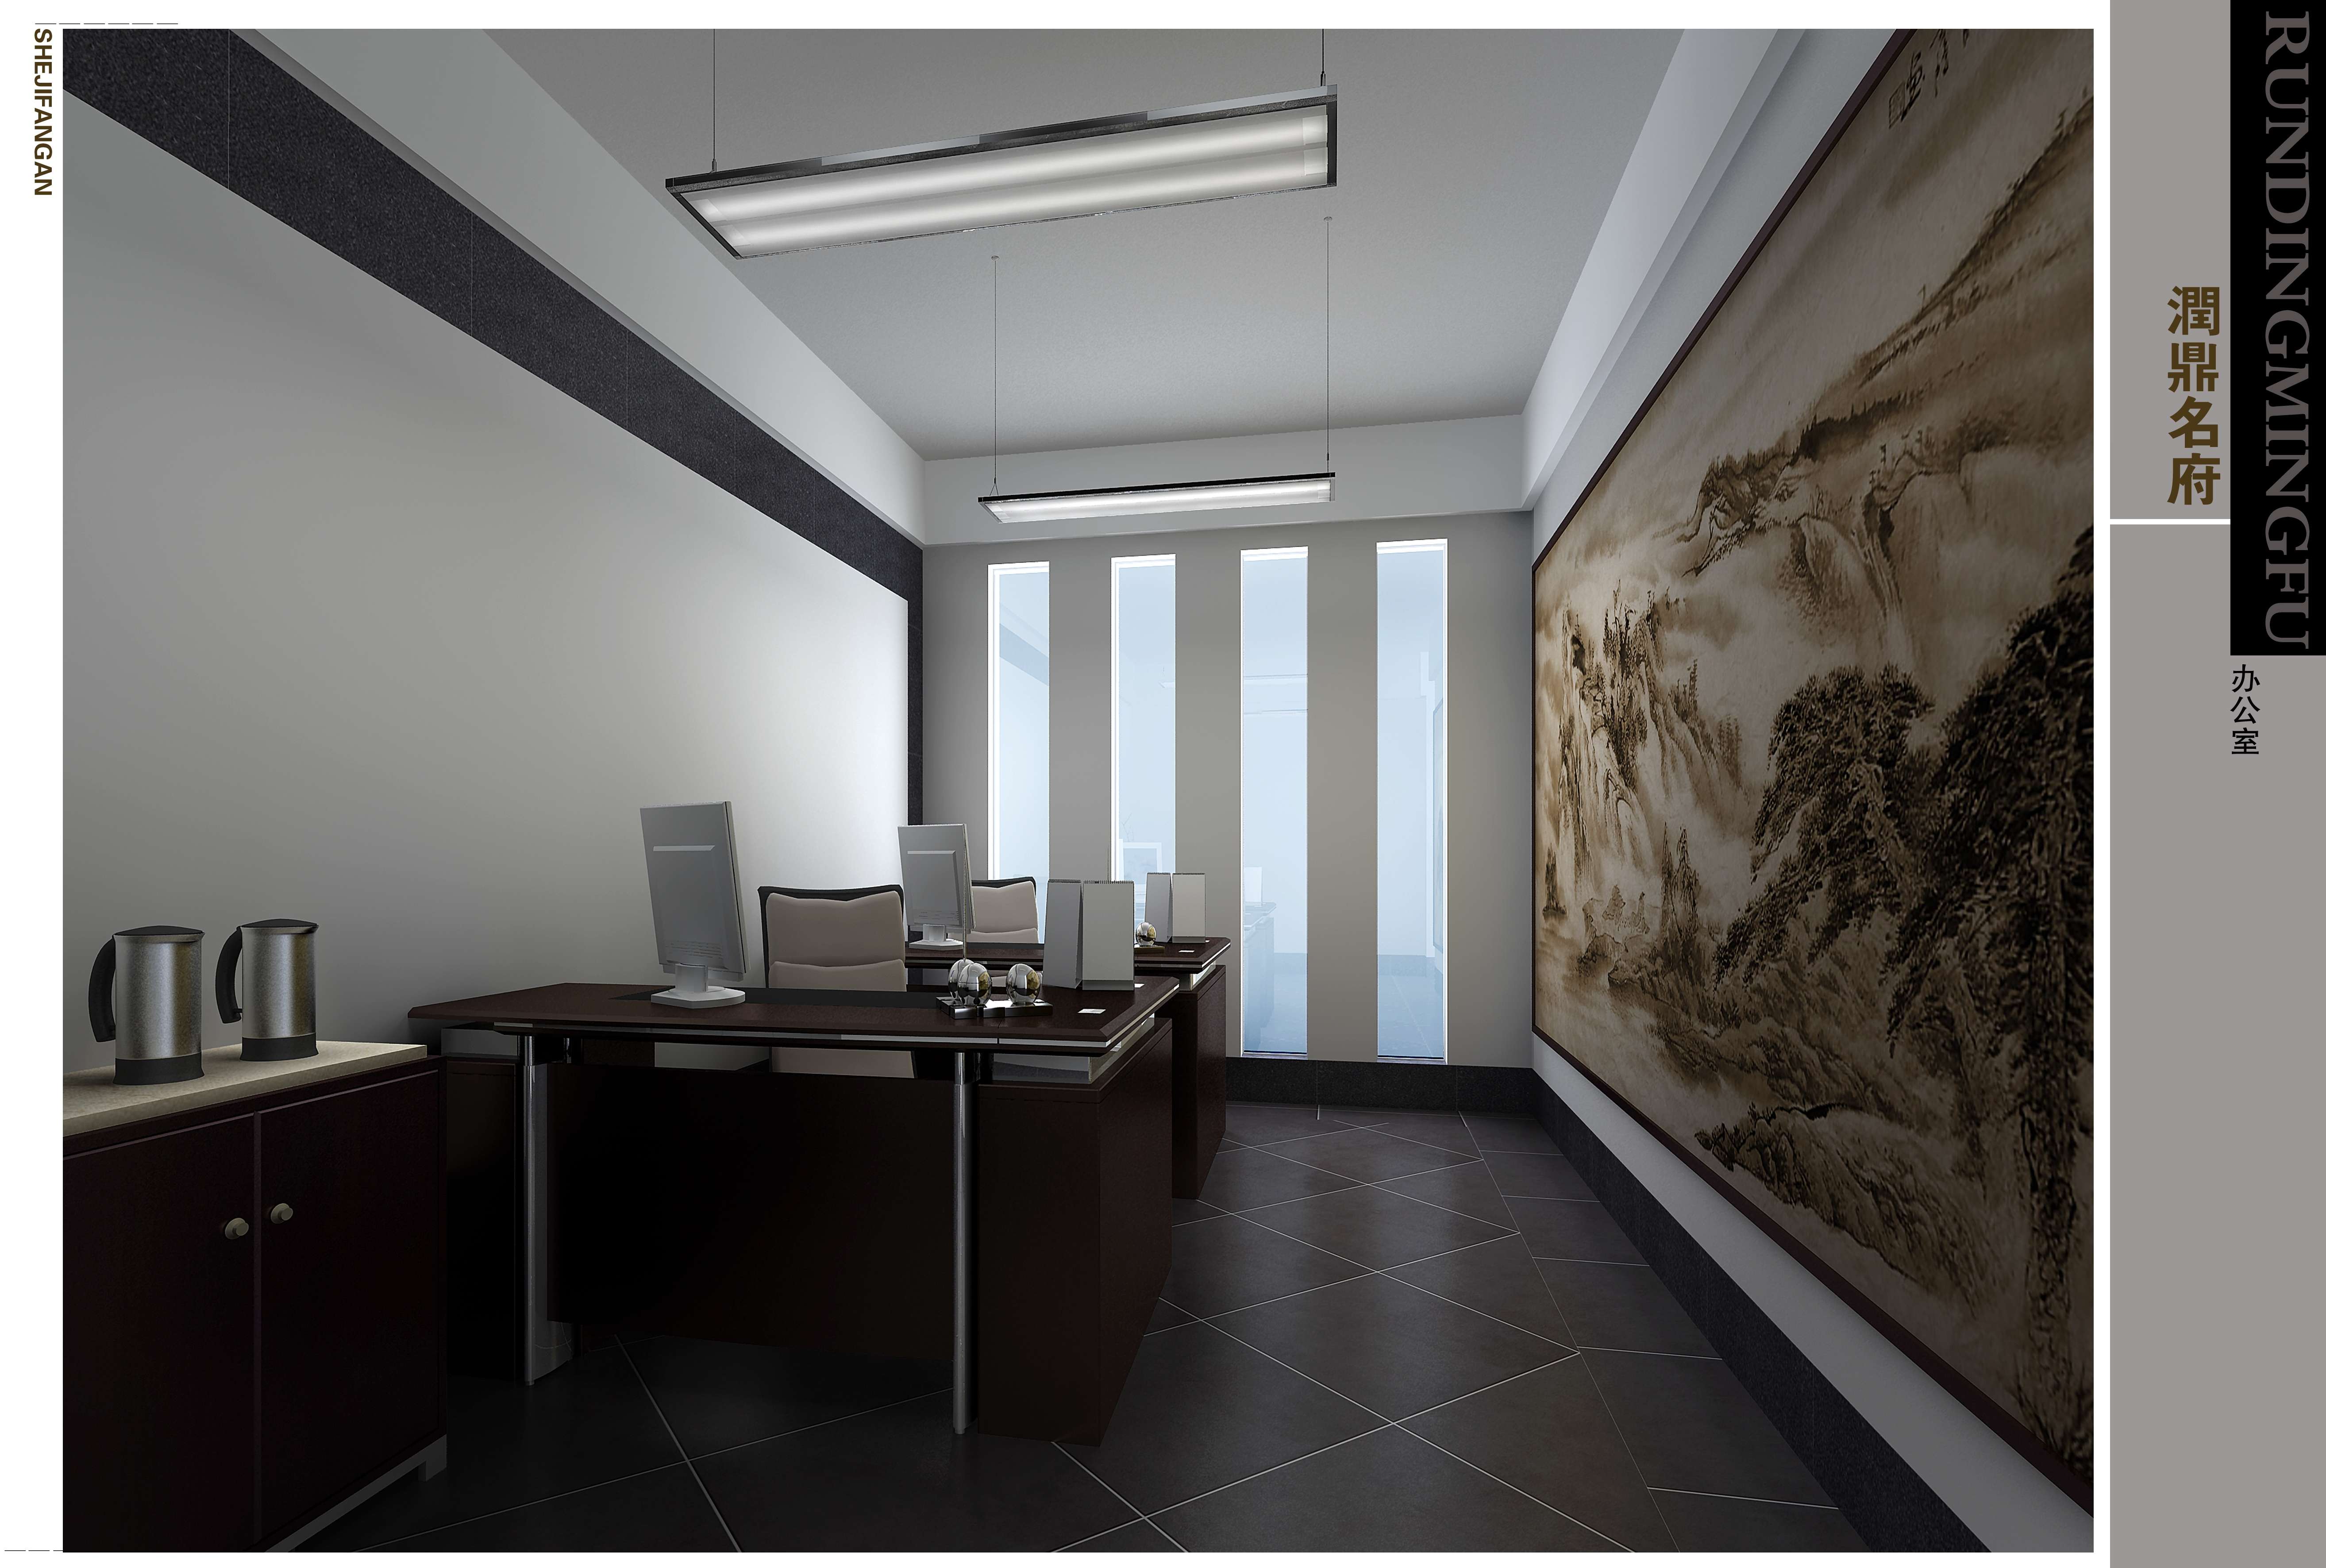 售楼处设计欧式中式现代高清售楼部效果图3D效果图-11